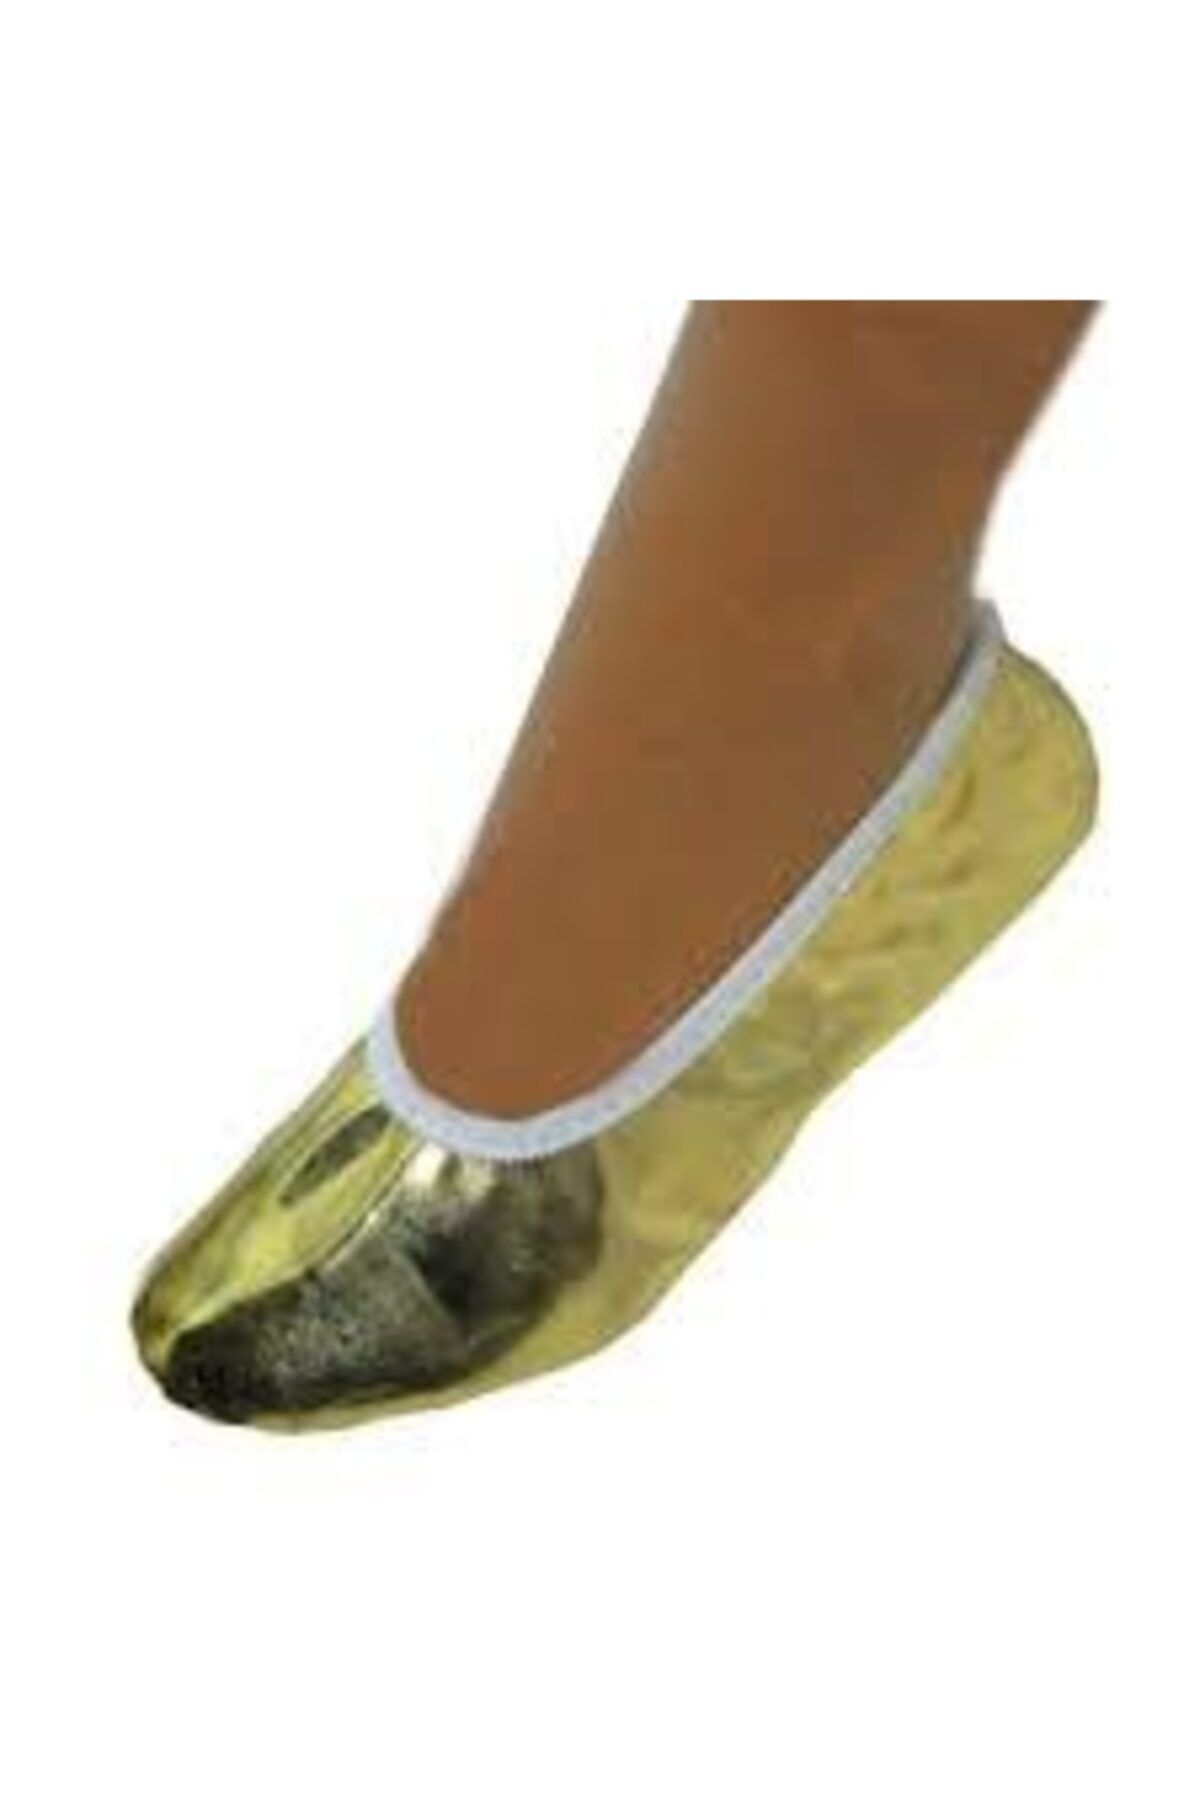 salarticaret Pisipisi Bale Ayakkabı Golt Altın Sarısı Lame Rengi